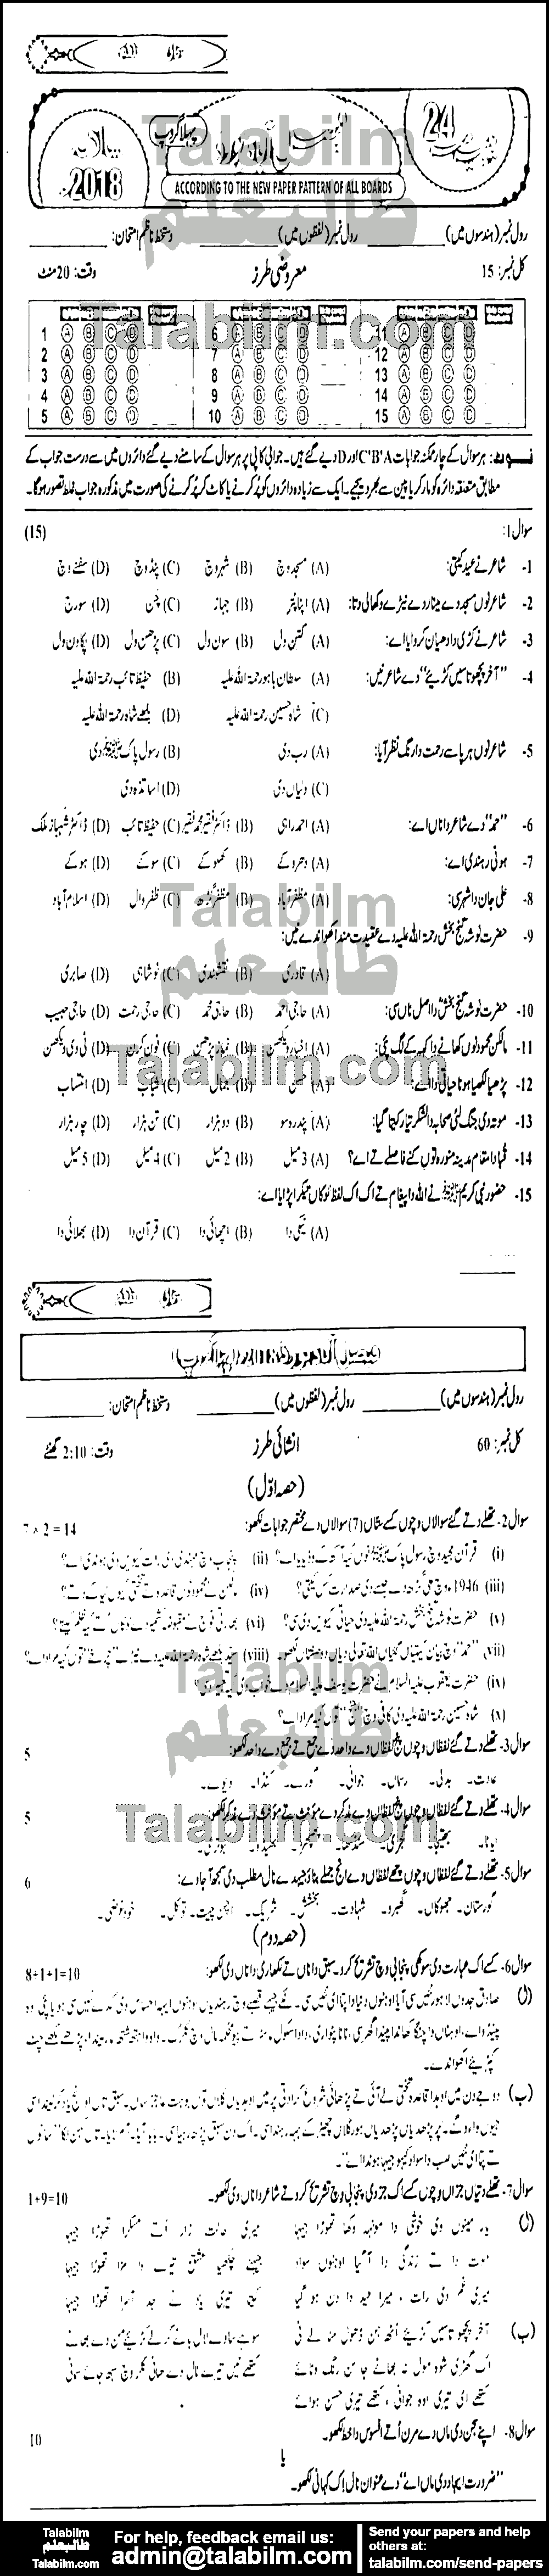 Punjabi 0 past paper for Urdu Medium 2018 Group-I